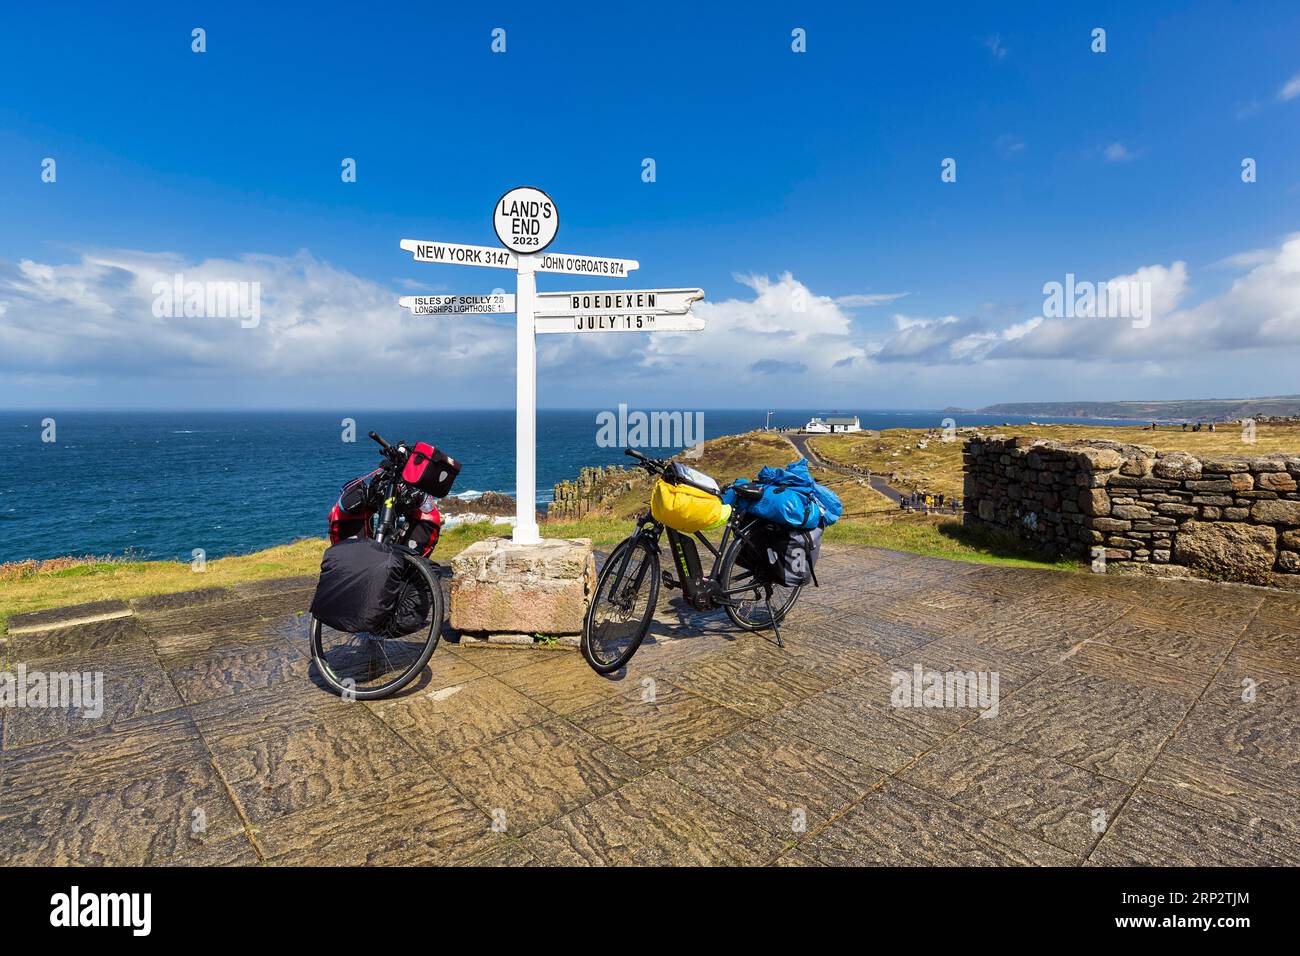 Deux e-bikes au célèbre panneau indiquant New York, John o' Groats et les îles Scilly, LANd's End, Lands End, Penzance, Penwith Peninsula, Cornwall Banque D'Images